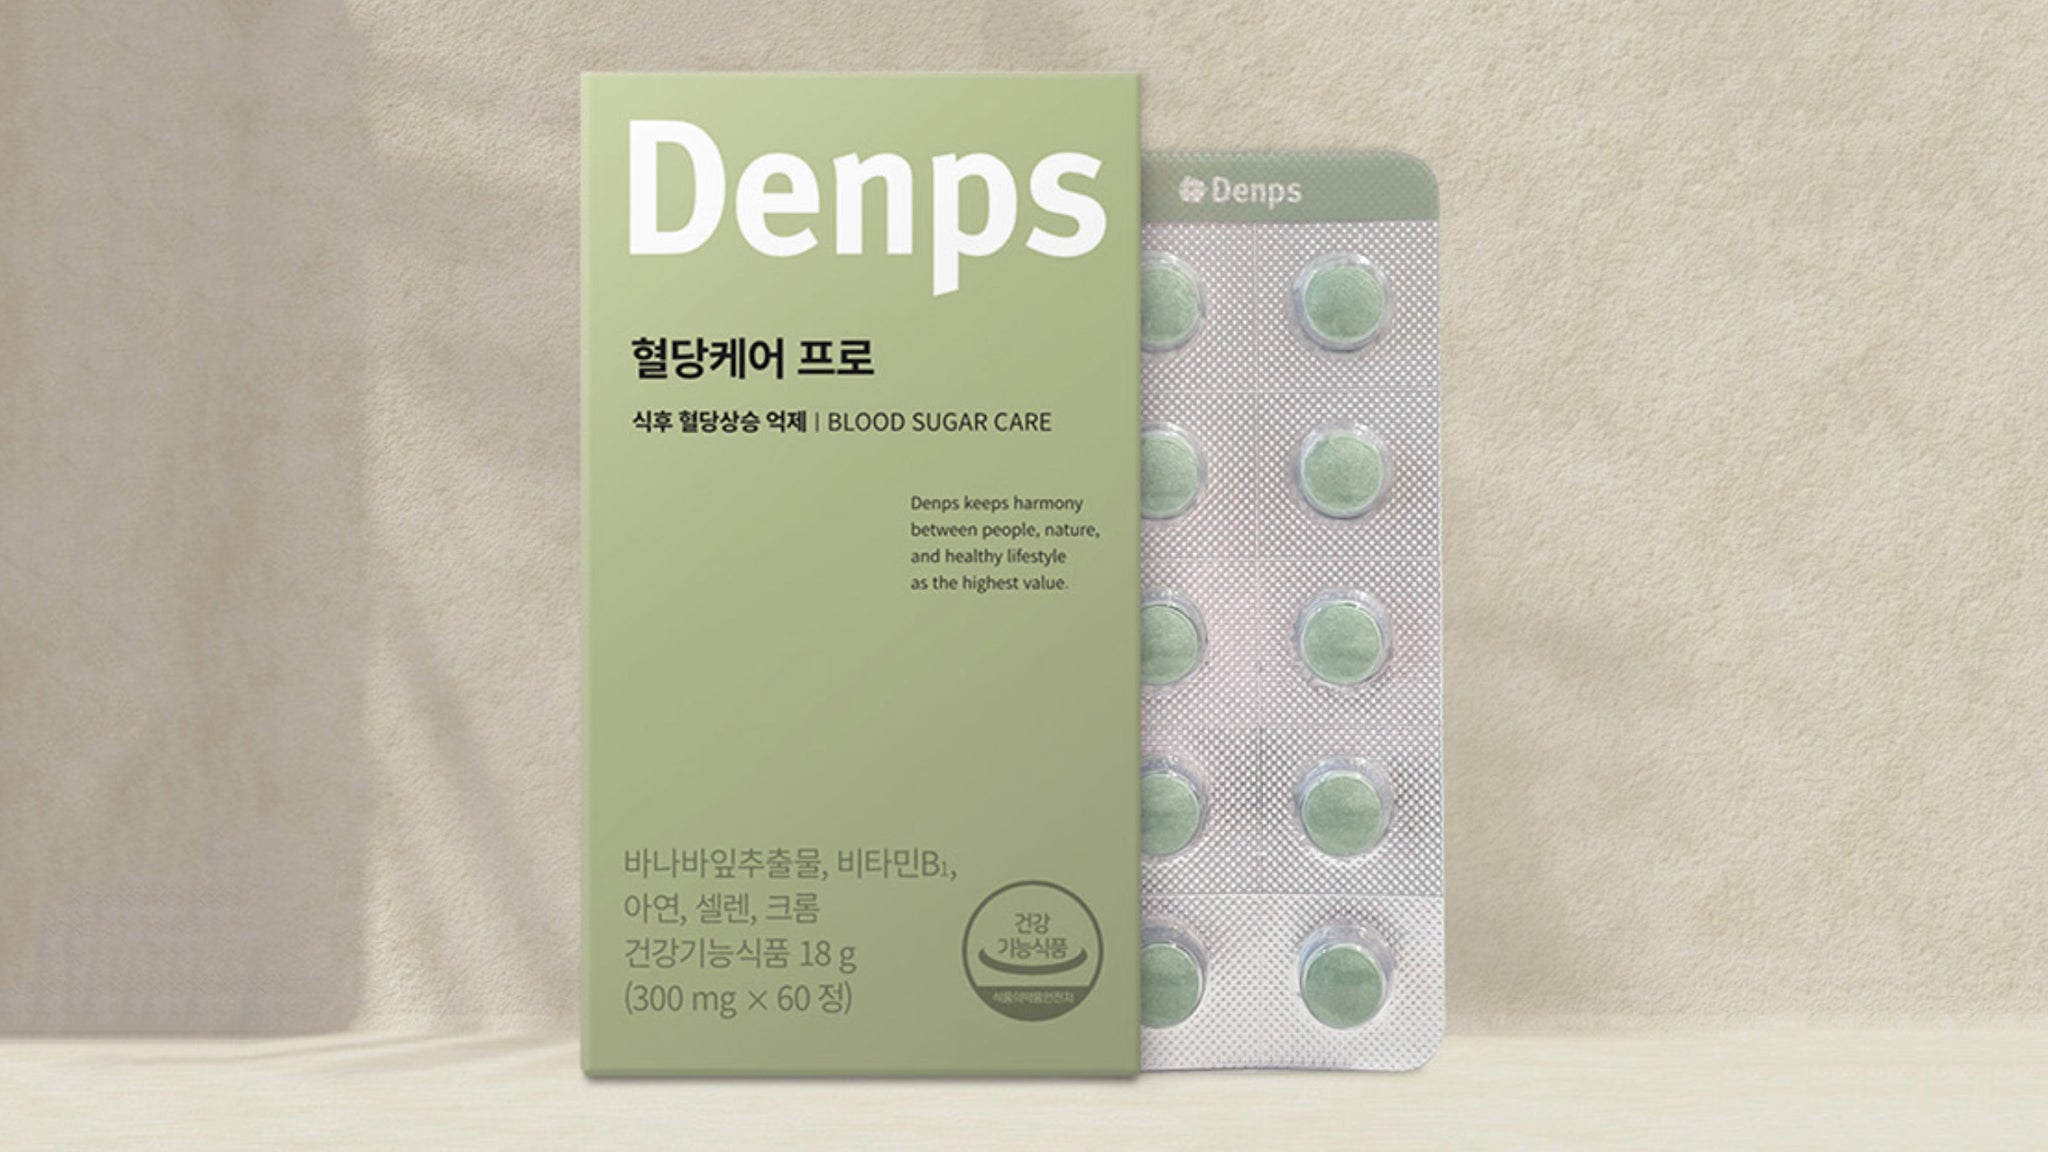 [Denps] Blood Sugar Care Pro - Tablets